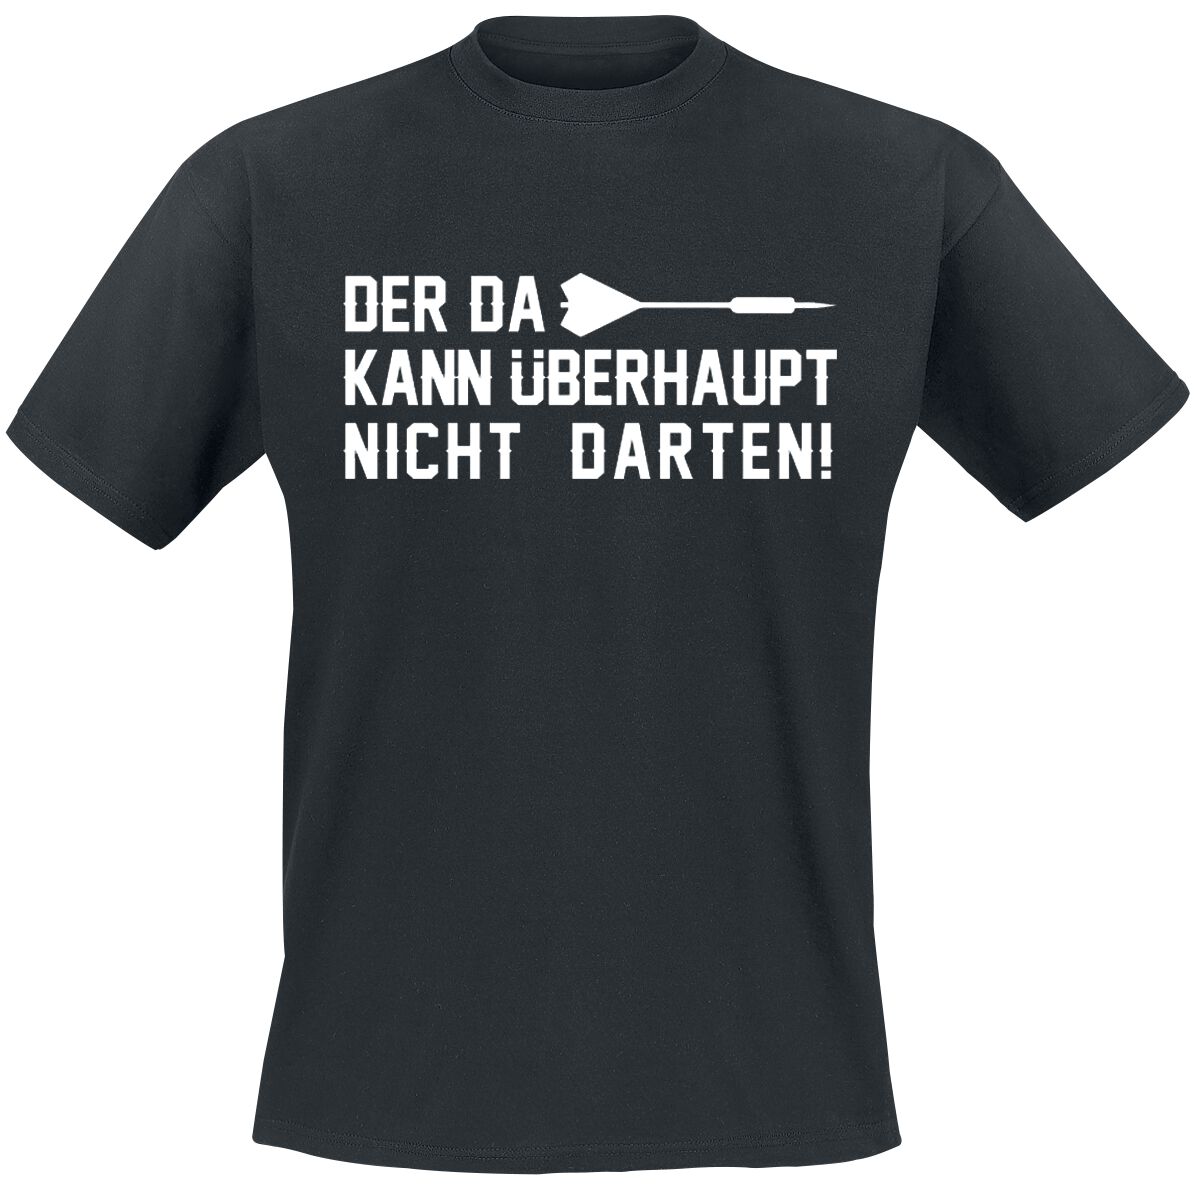 Darts T-Shirt - Der da kann überhaupt nicht darten! - M bis 3XL - für Männer - Größe L - schwarz